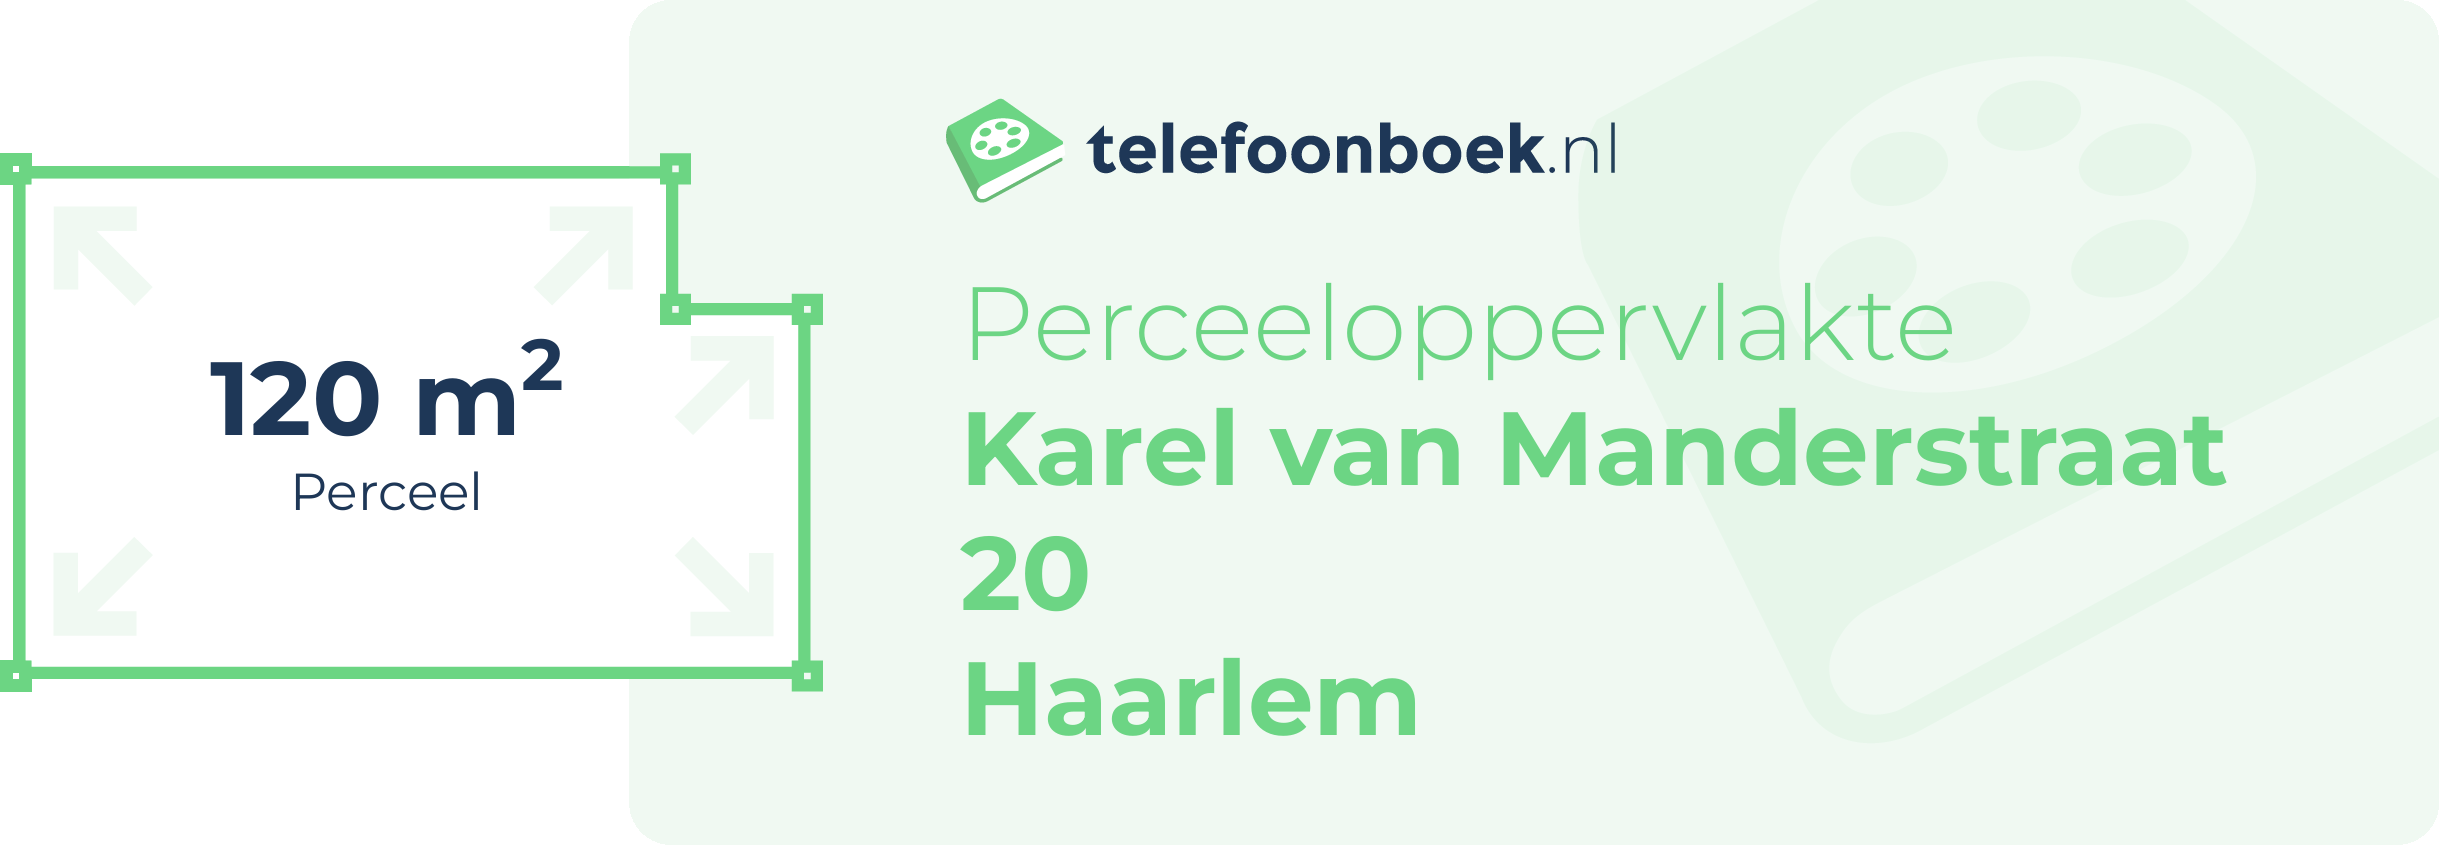 Perceeloppervlakte Karel Van Manderstraat 20 Haarlem